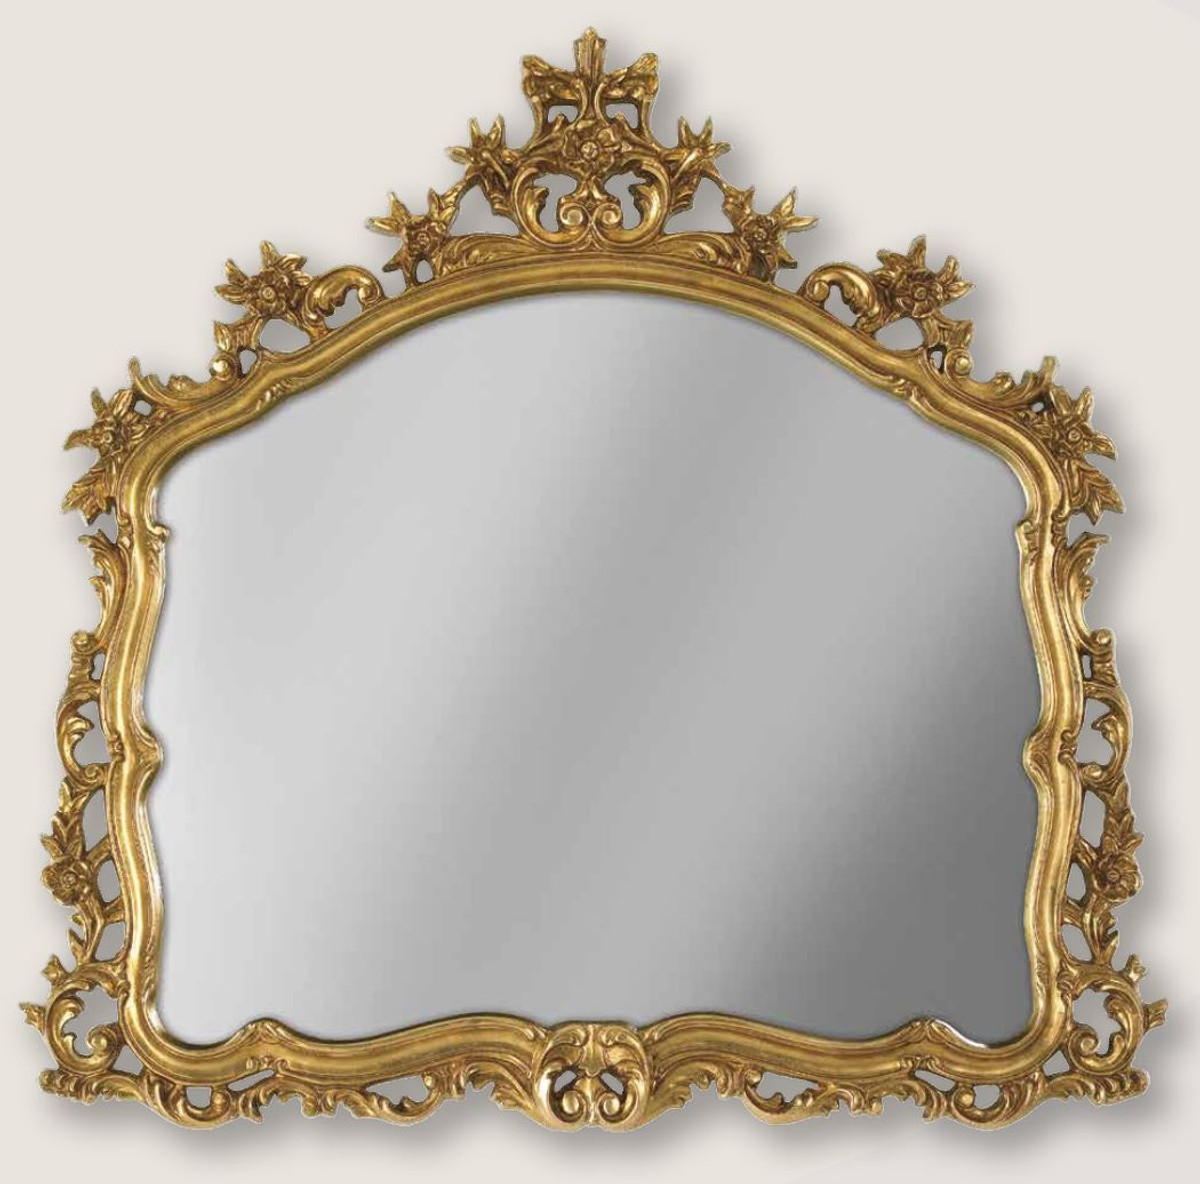 Baroque mirror by Casa Padrino - luxury wall mirror in repro antique design